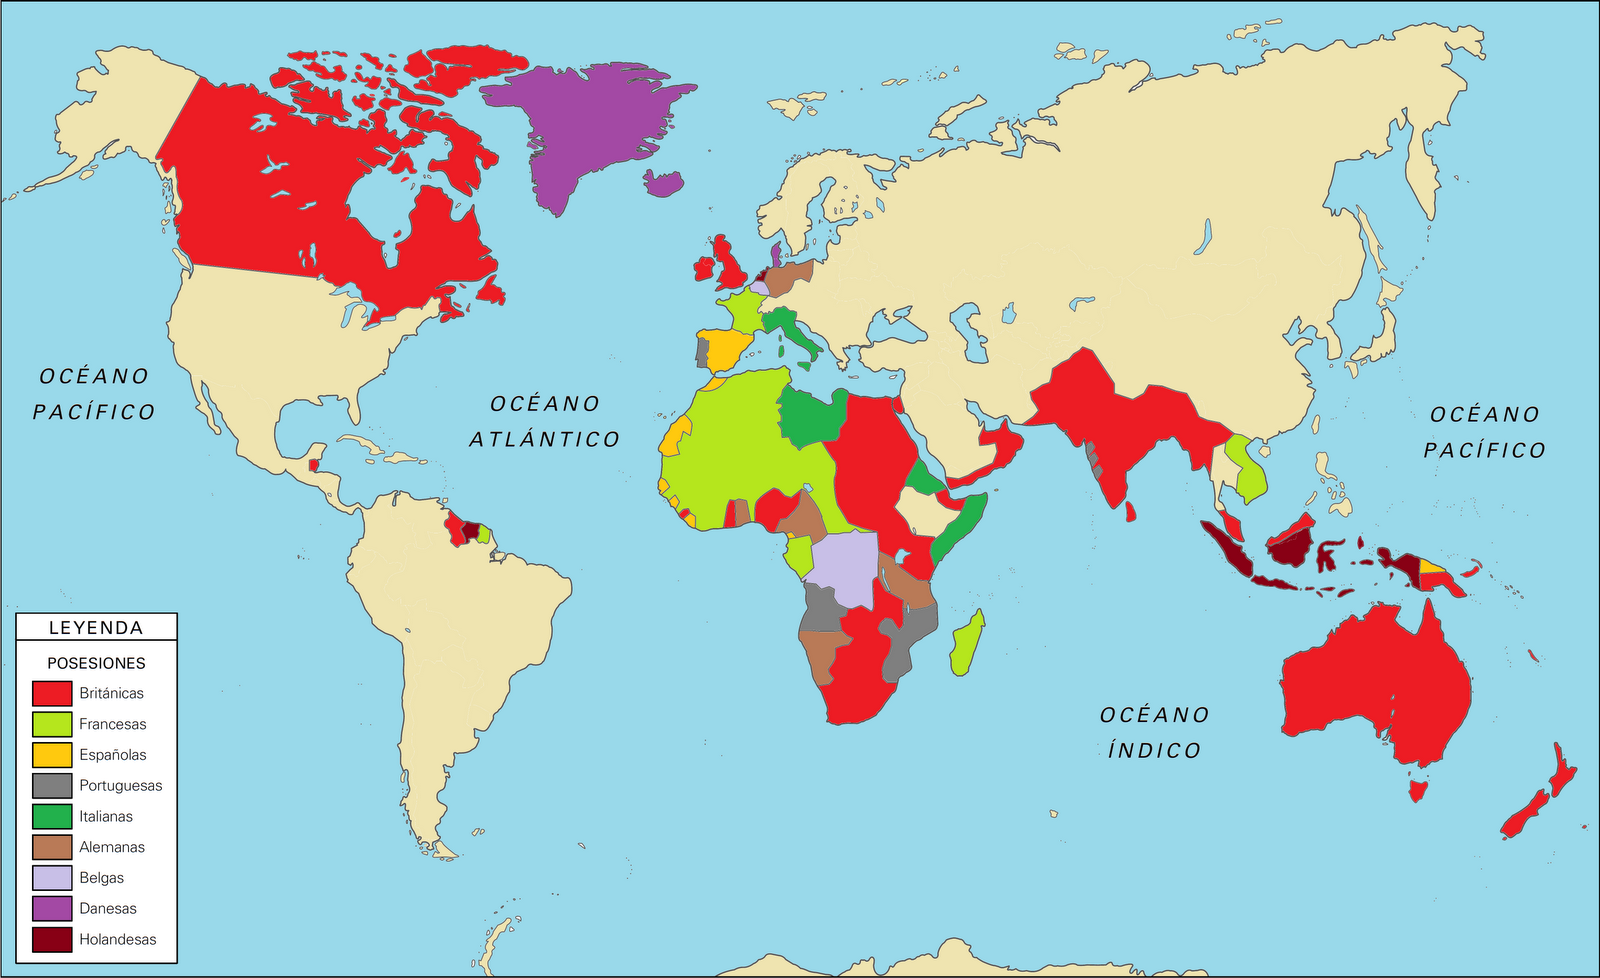 Imperios coloniales